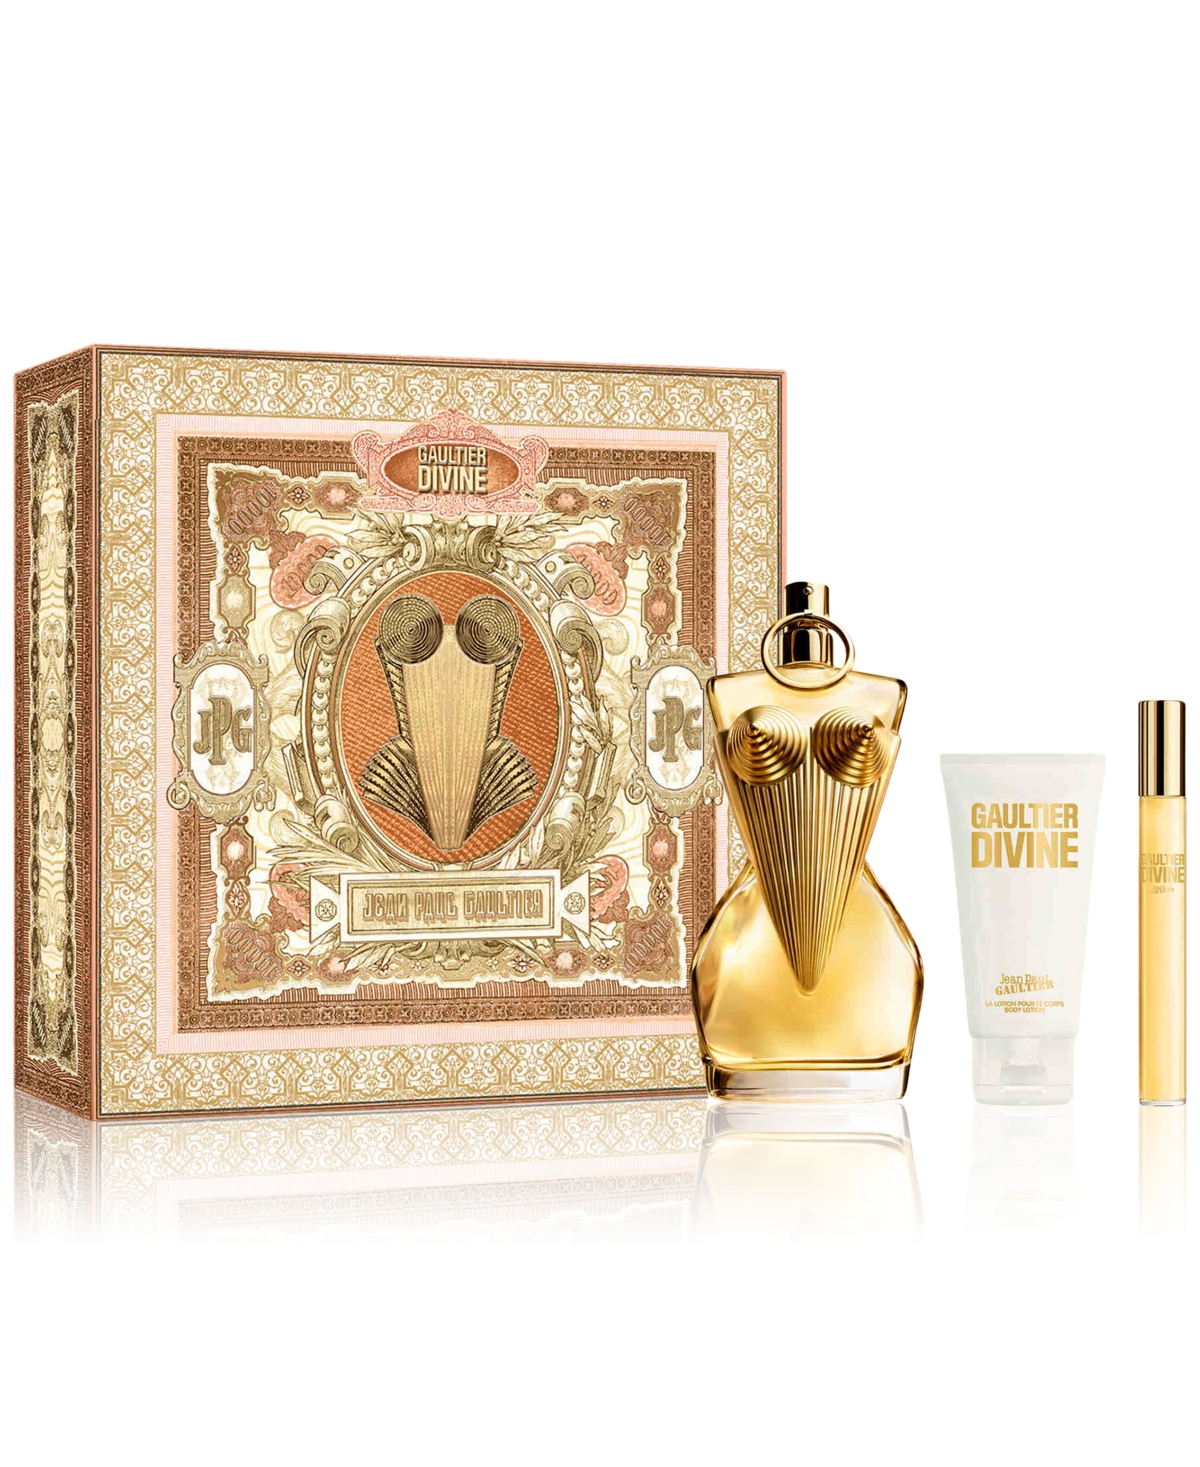 3-Pc. Gaultier Divine Eau de Parfum Gift Set